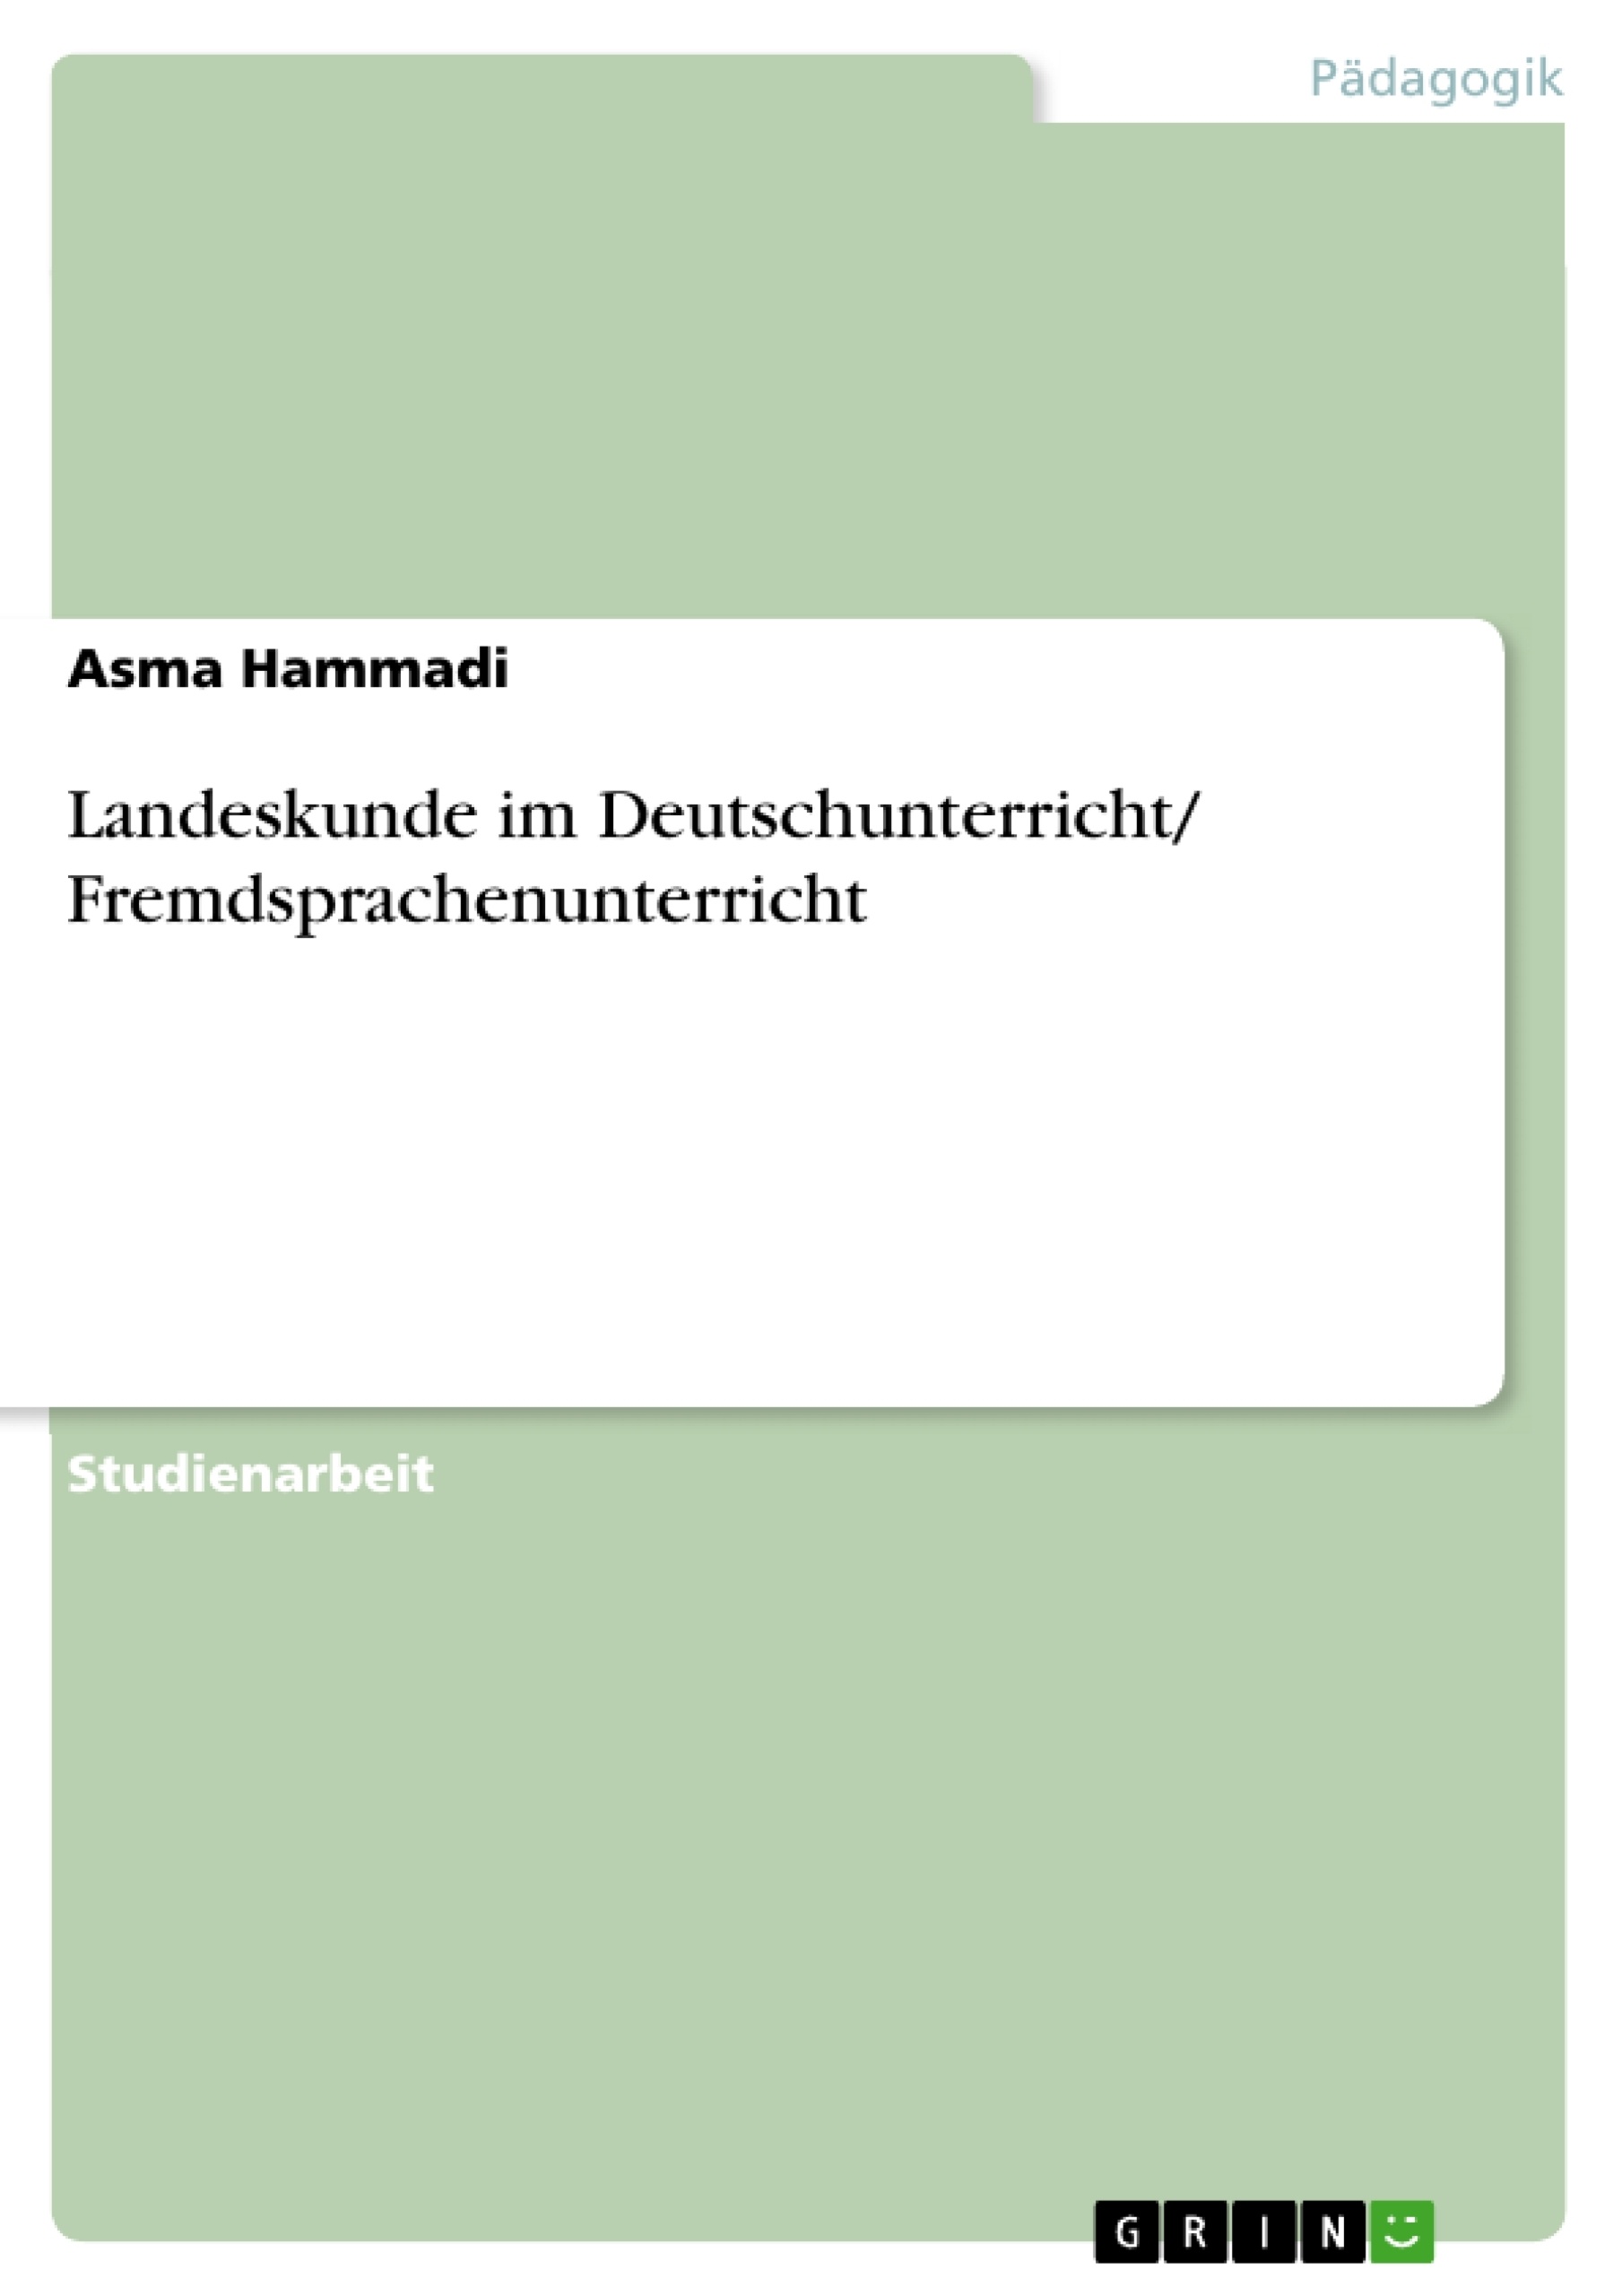 Título: Landeskunde im Deutschunterricht/ Fremdsprachenunterricht